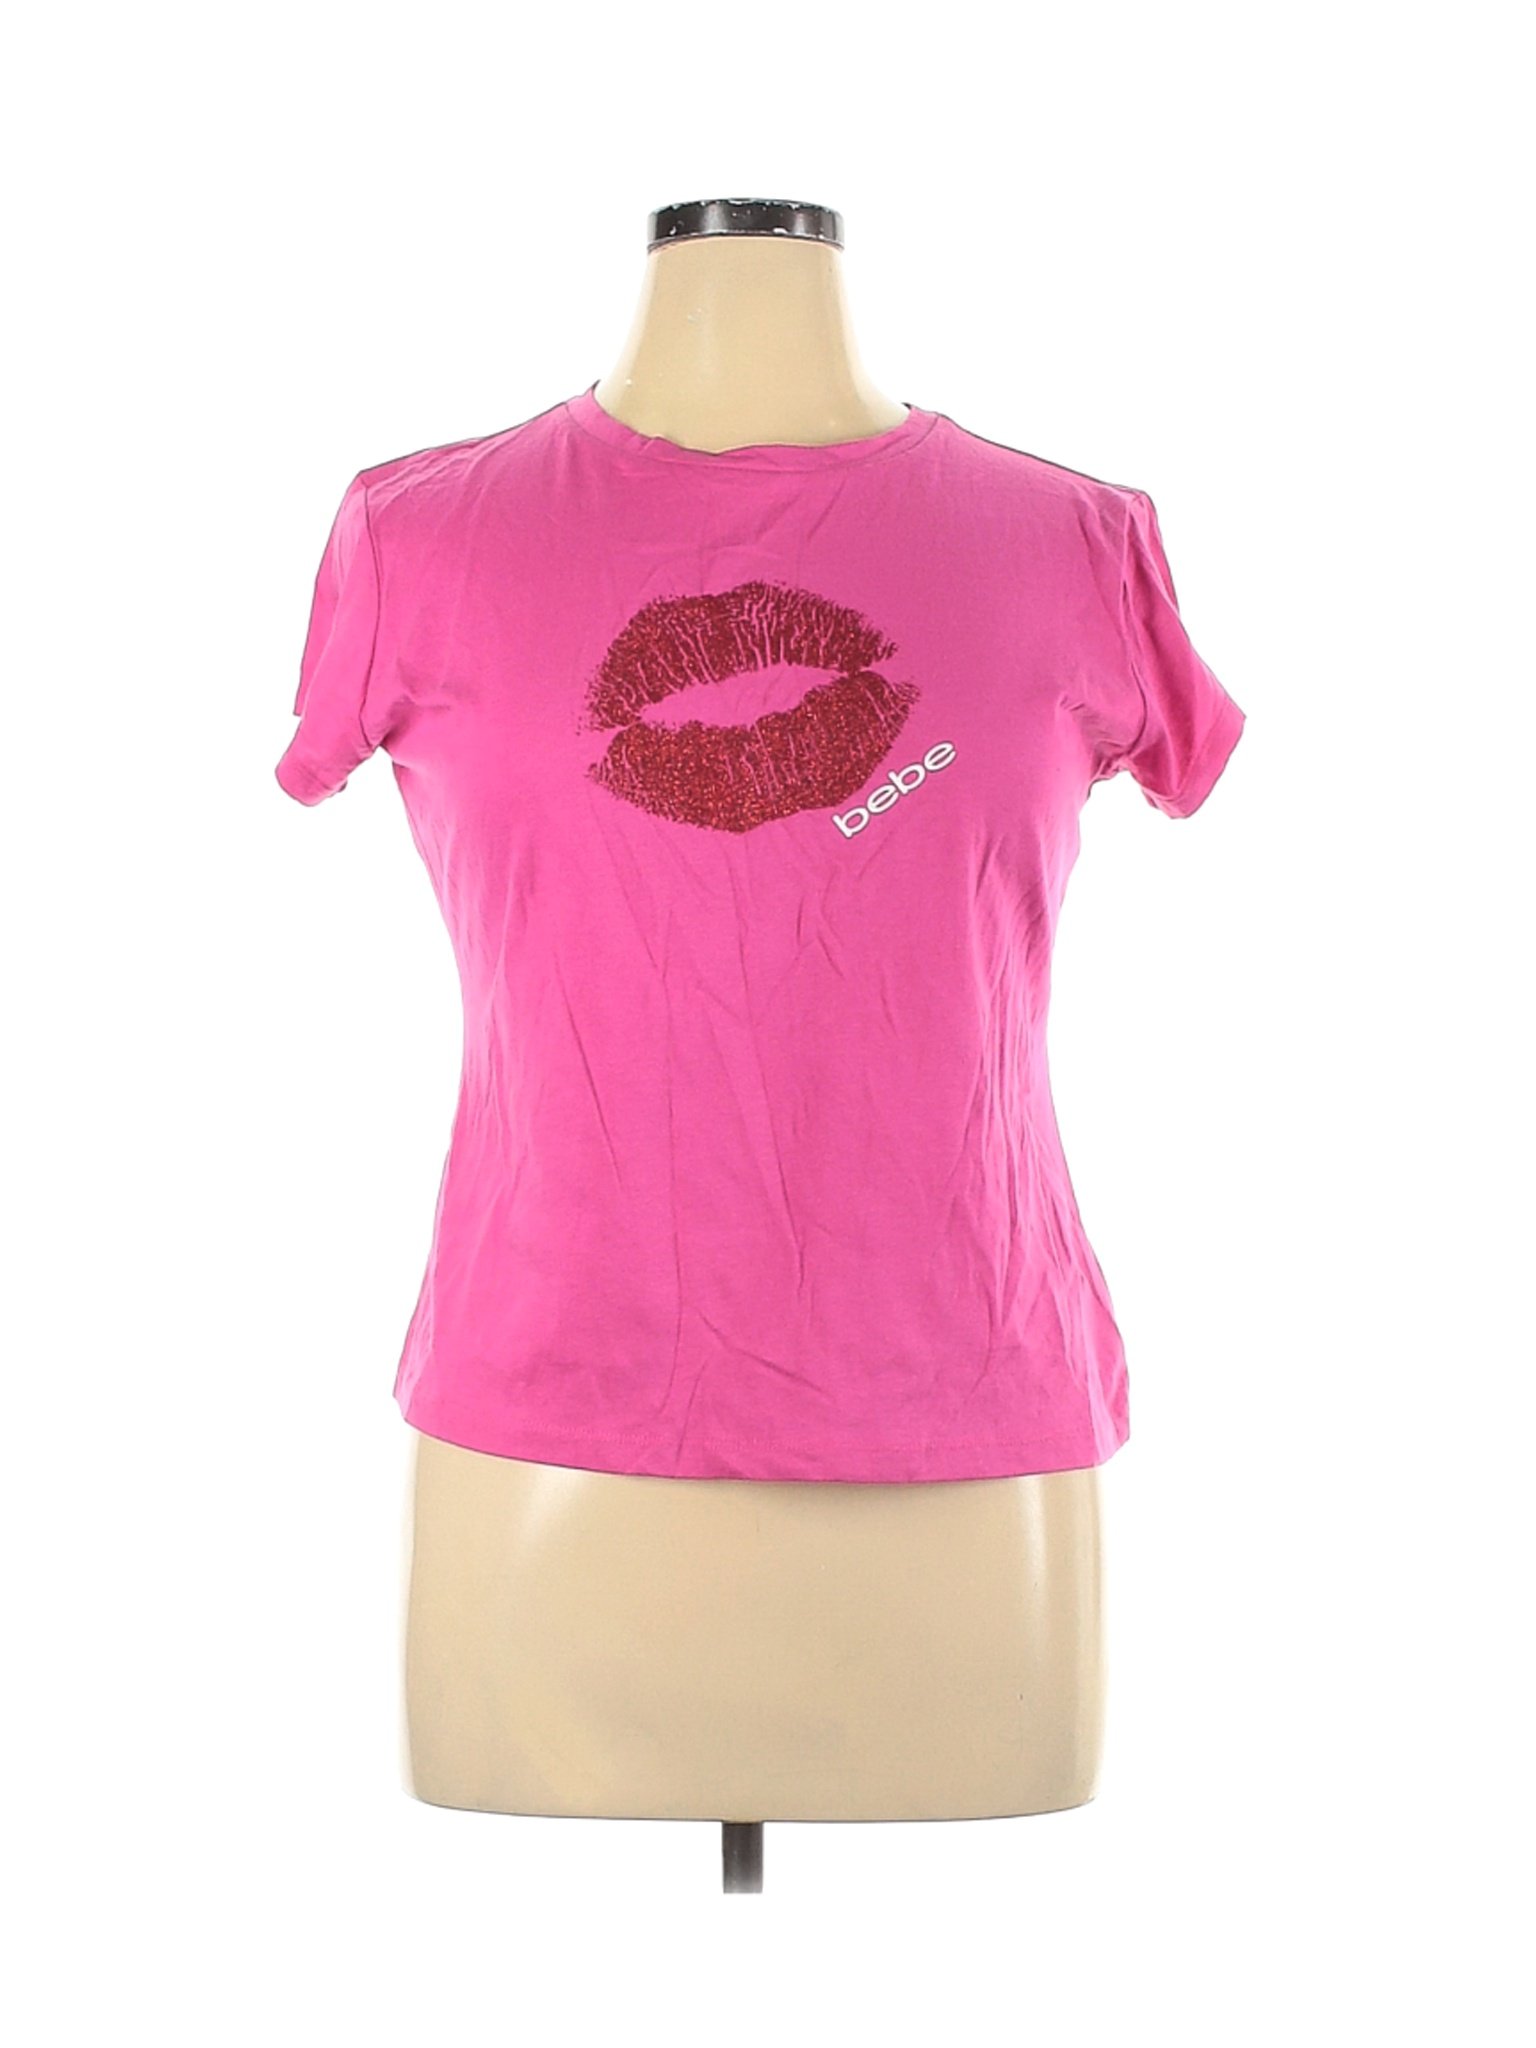 Bebe Women Pink Short Sleeve T-Shirt XL | eBay